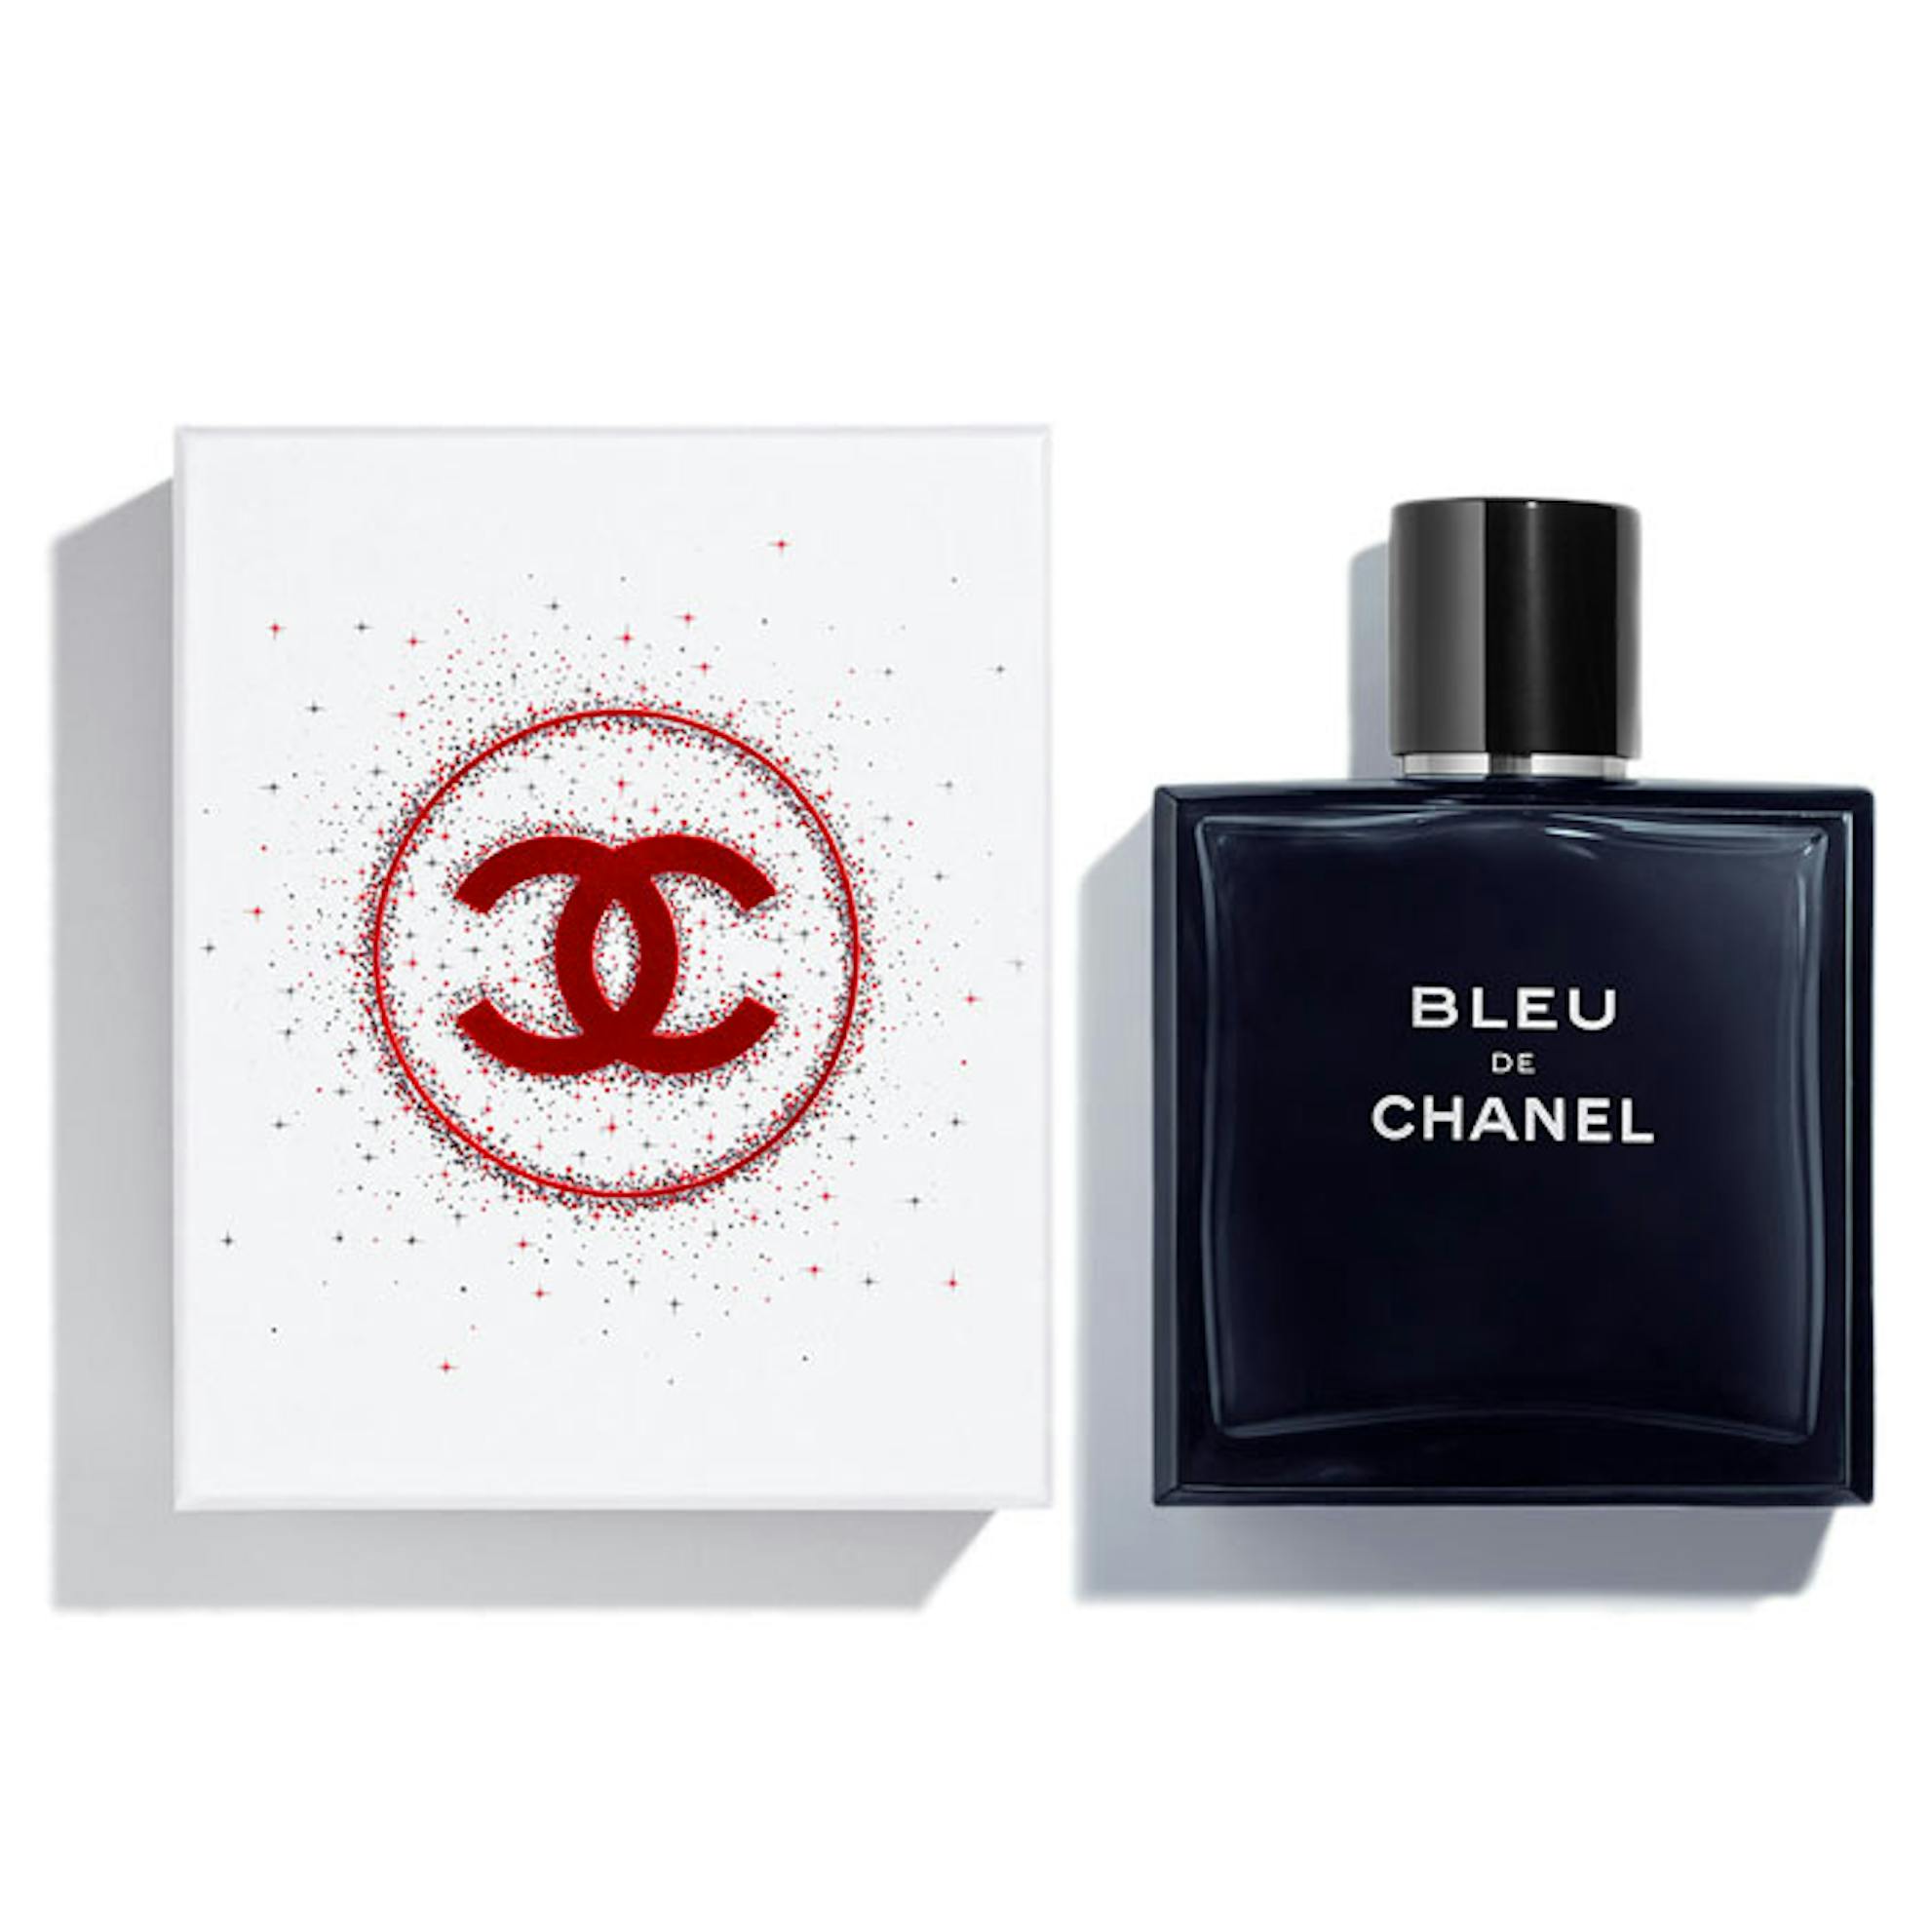 Chanel Bleu De Chanel Travel Spray Perfume For Men 3x20ml Eau de